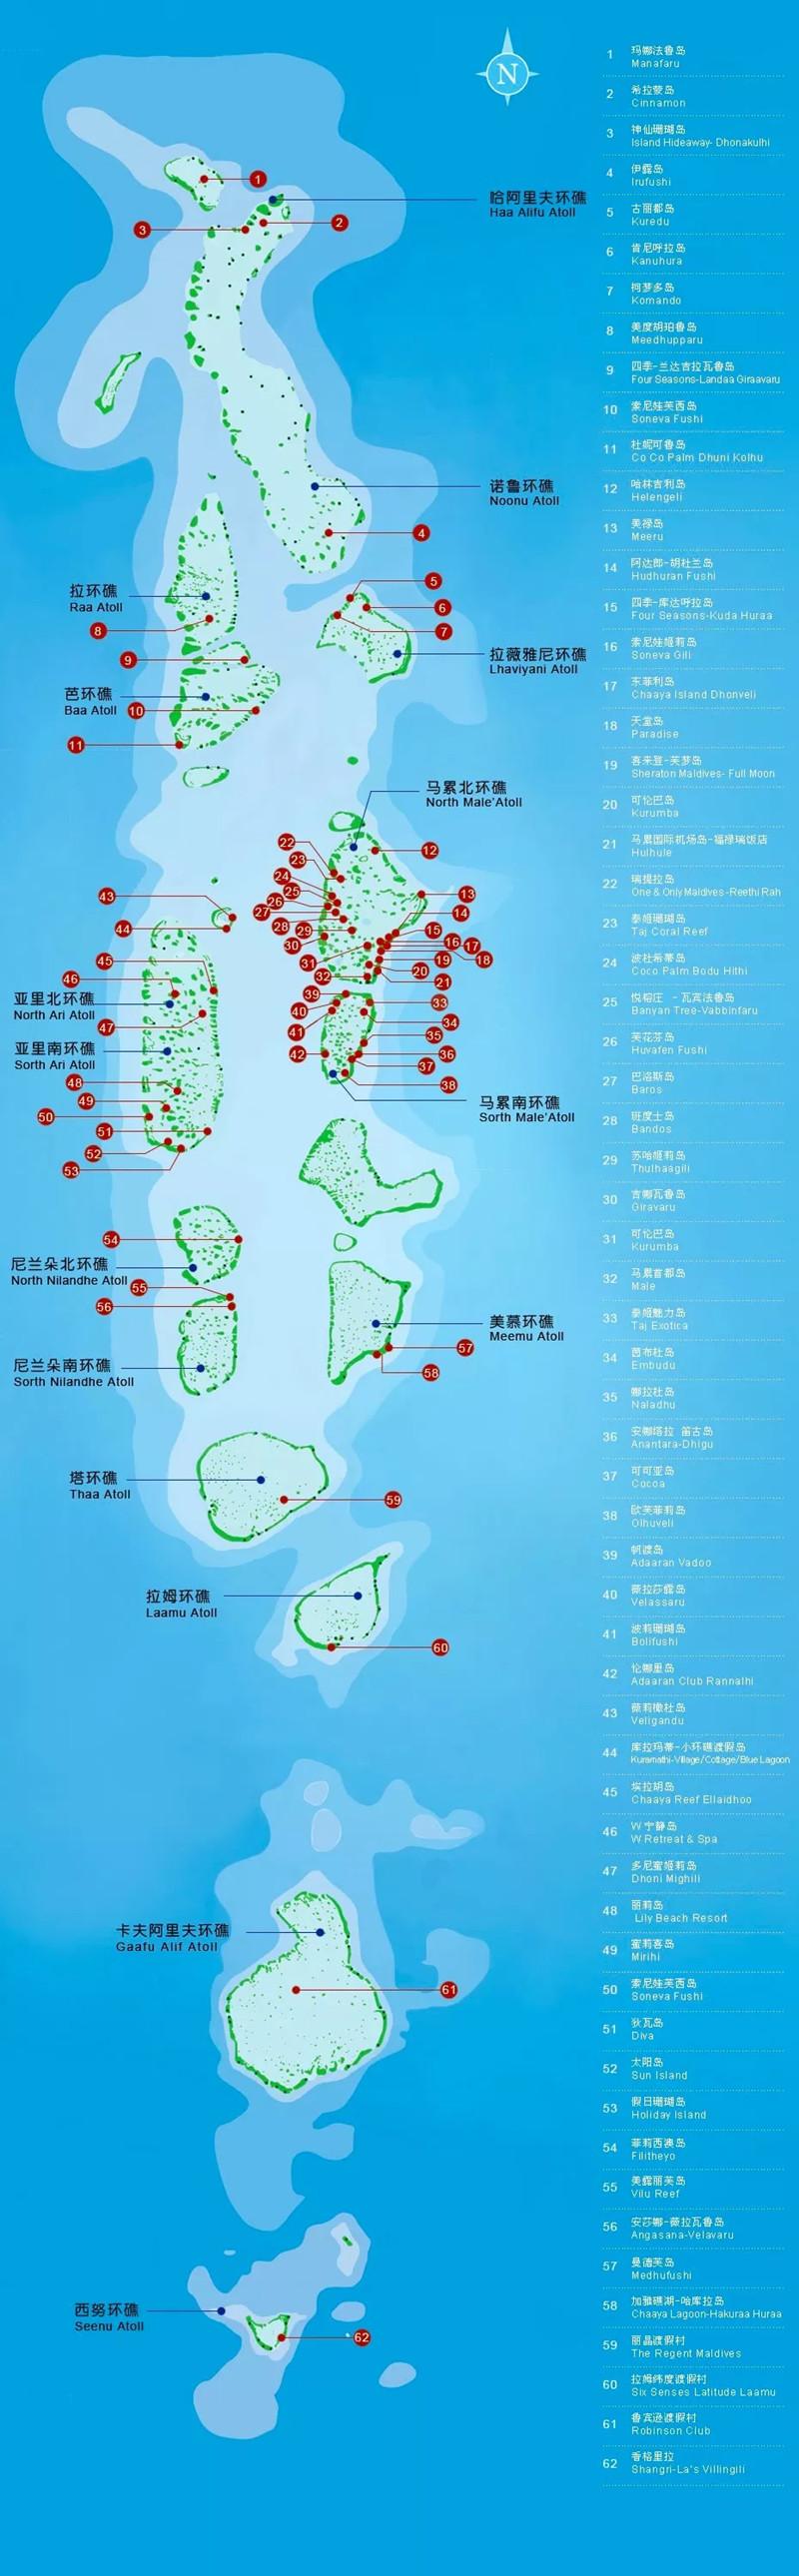 马尔代夫岛屿星级分类与价格 马尔代夫旅游攻略大全